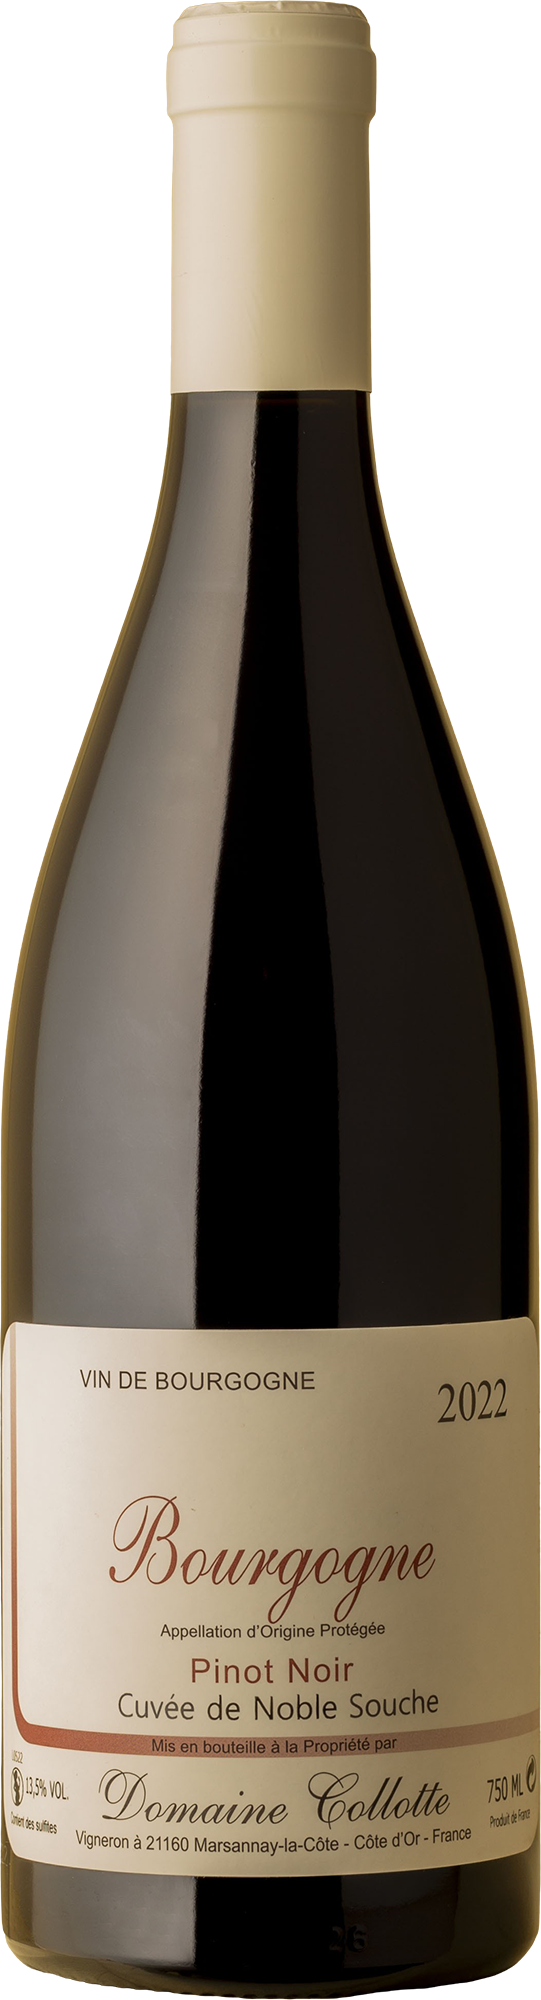 Domaine Collotte - Bourgogne Cuvee de Noble Souche Pinot Noir 2022 Red Wine